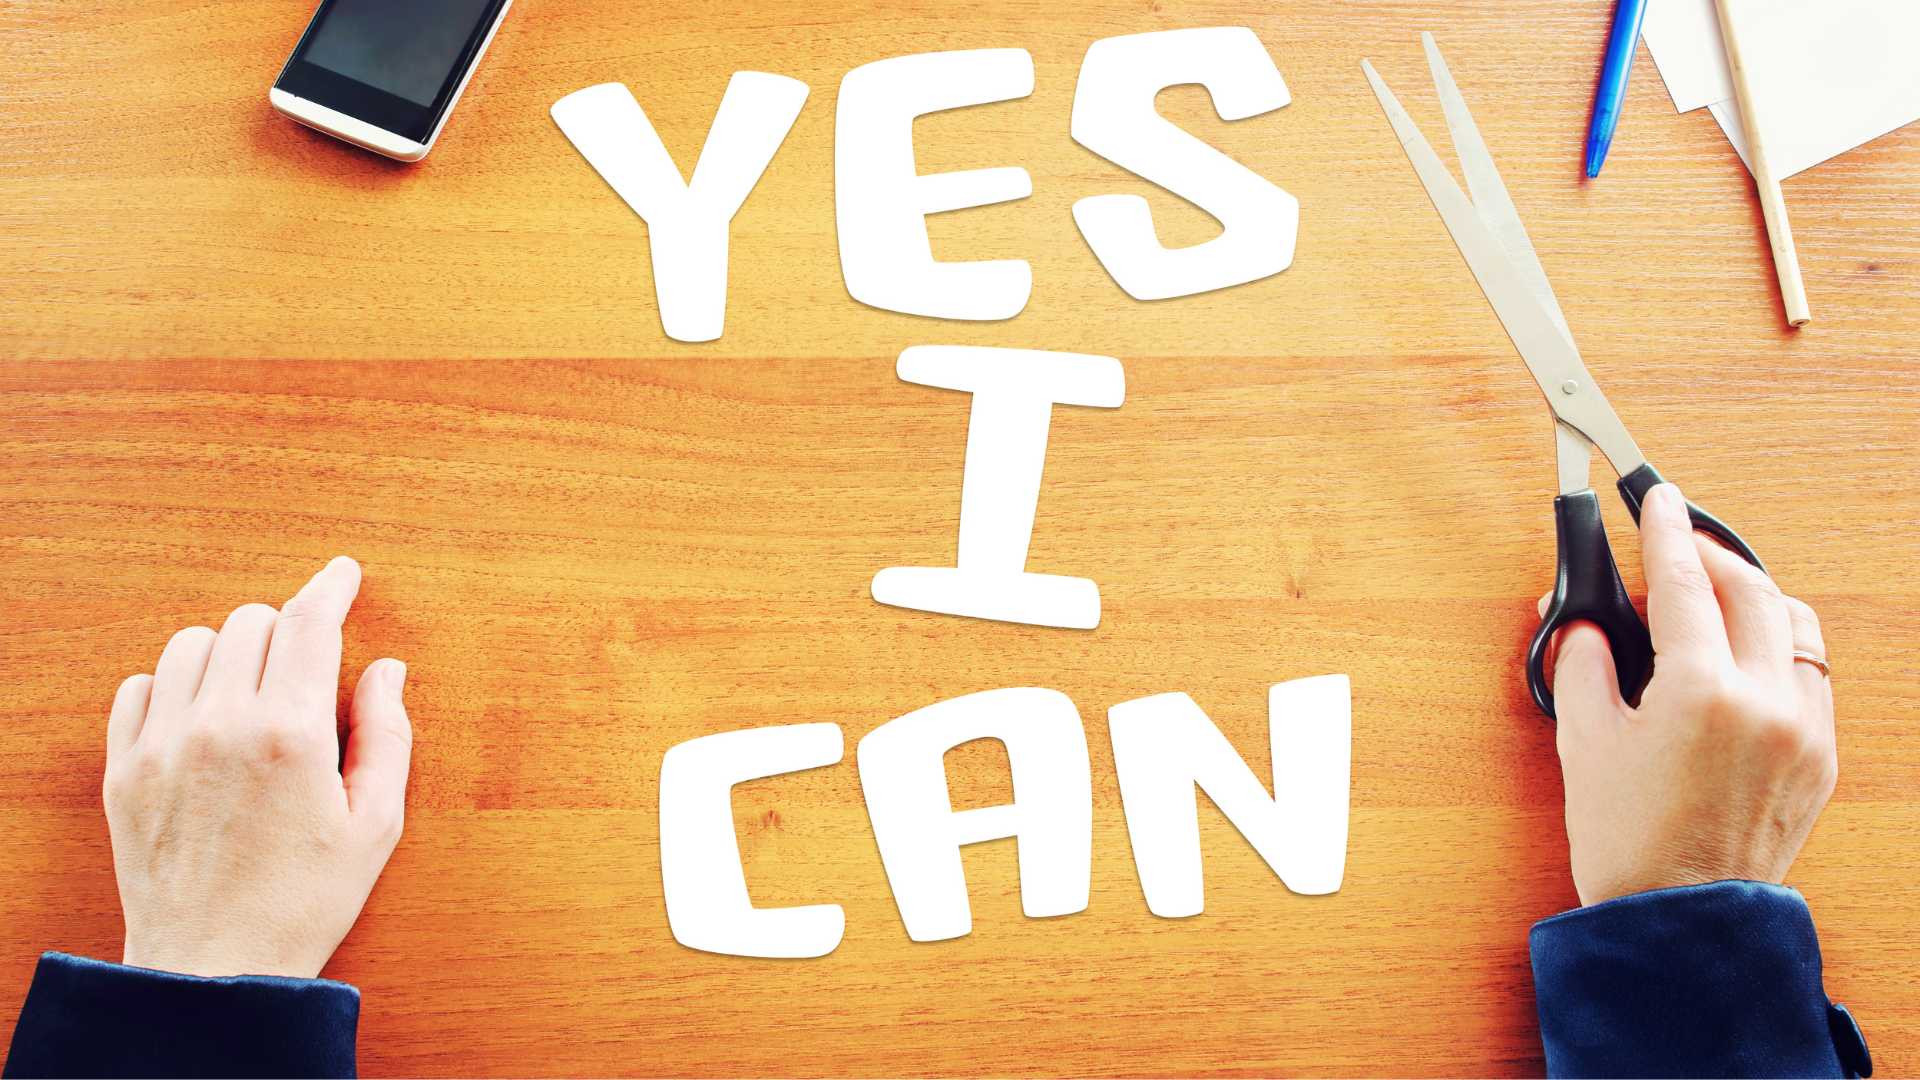 Auf diesem Bild sieht man den Schriftsatz "Yes I can" ausgeschnitten im Artikel zur Selbstverwirklichung
